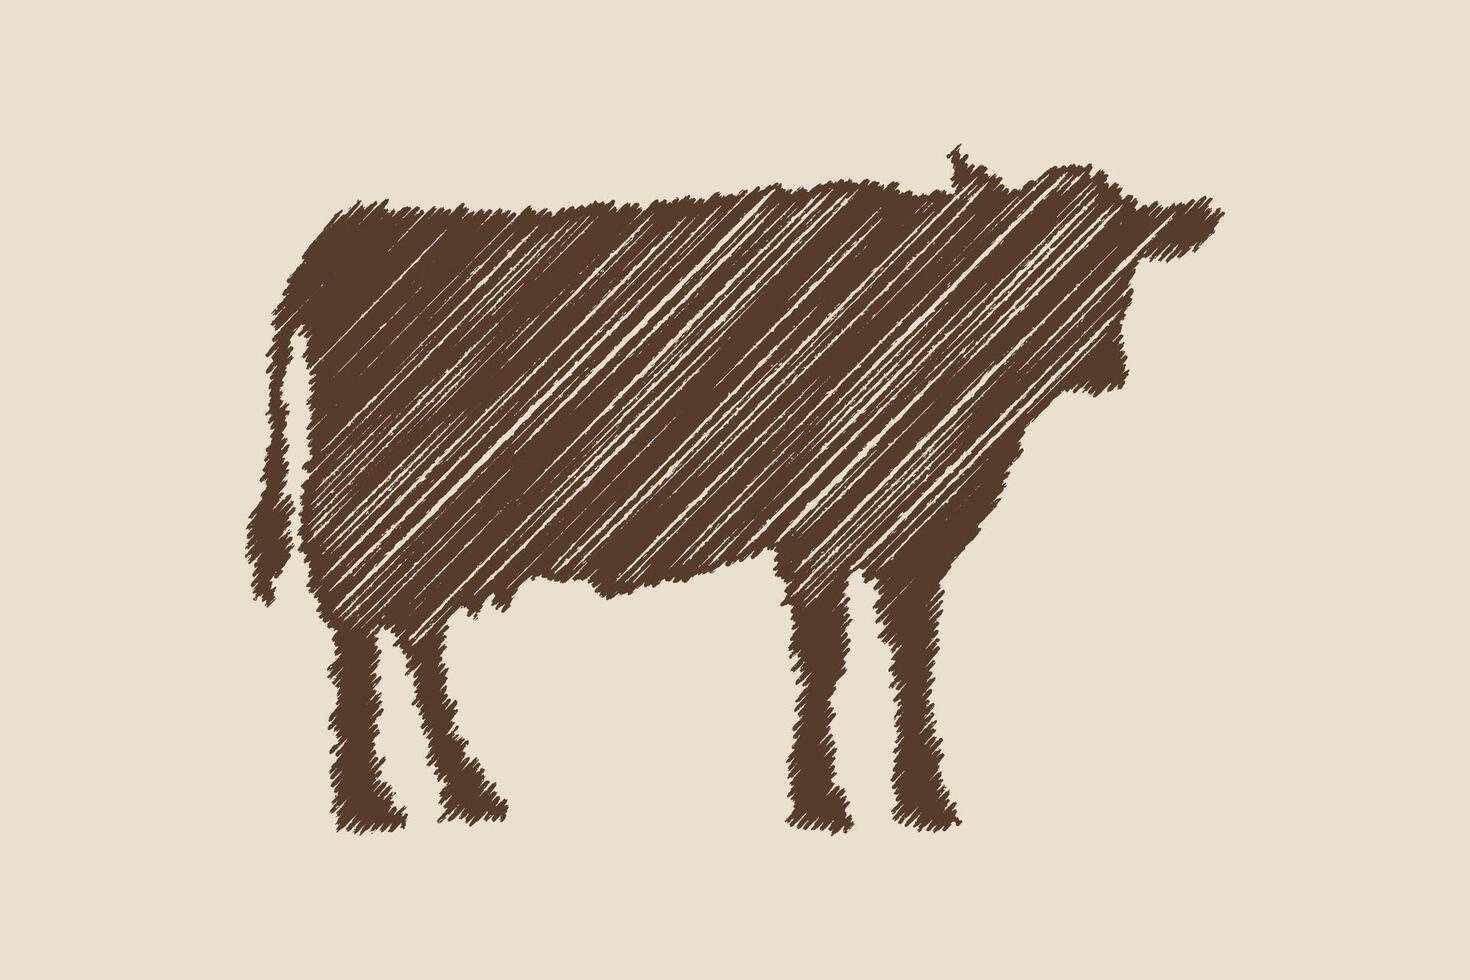 ancien gravure isolé vache ensemble illustration encre esquisser. vecteur